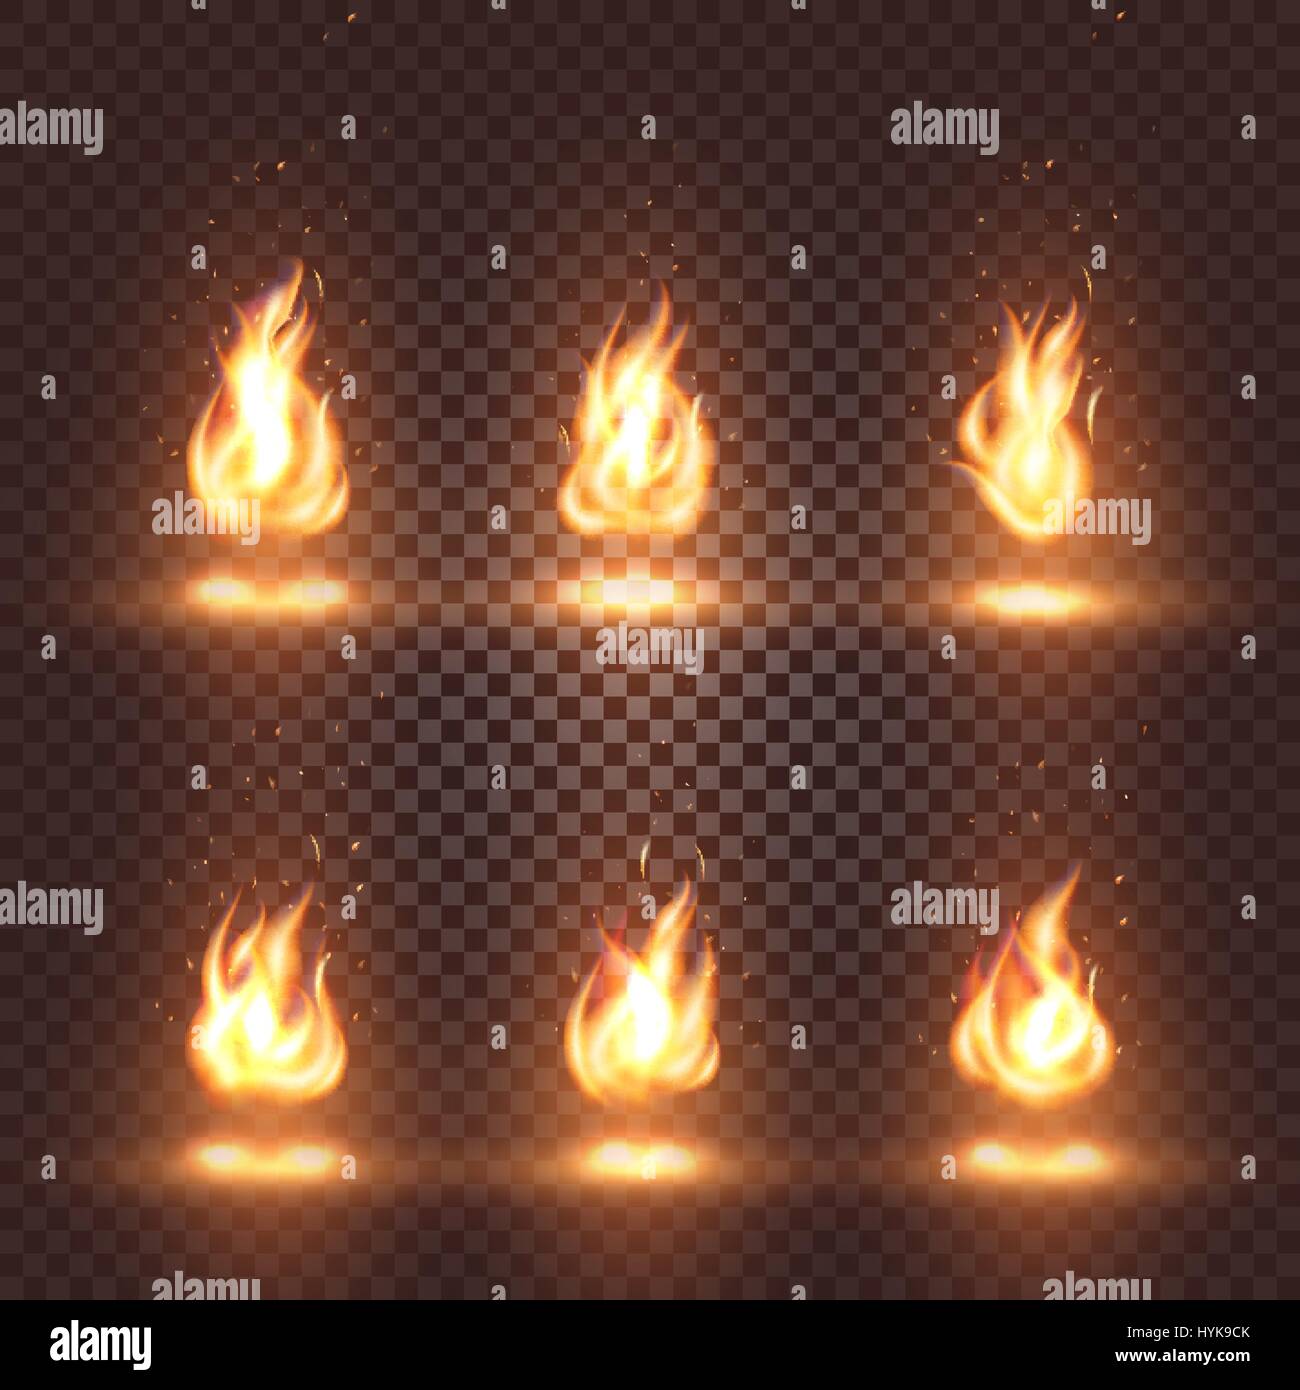 Abstrakte, realistische Feuer Flamme Bilder auf karierten Hintergrund isoliert Lagerfeuer unterschreibt Sammlung auf dunklen Hintergrund-Vektor-Illustration Stock Vektor